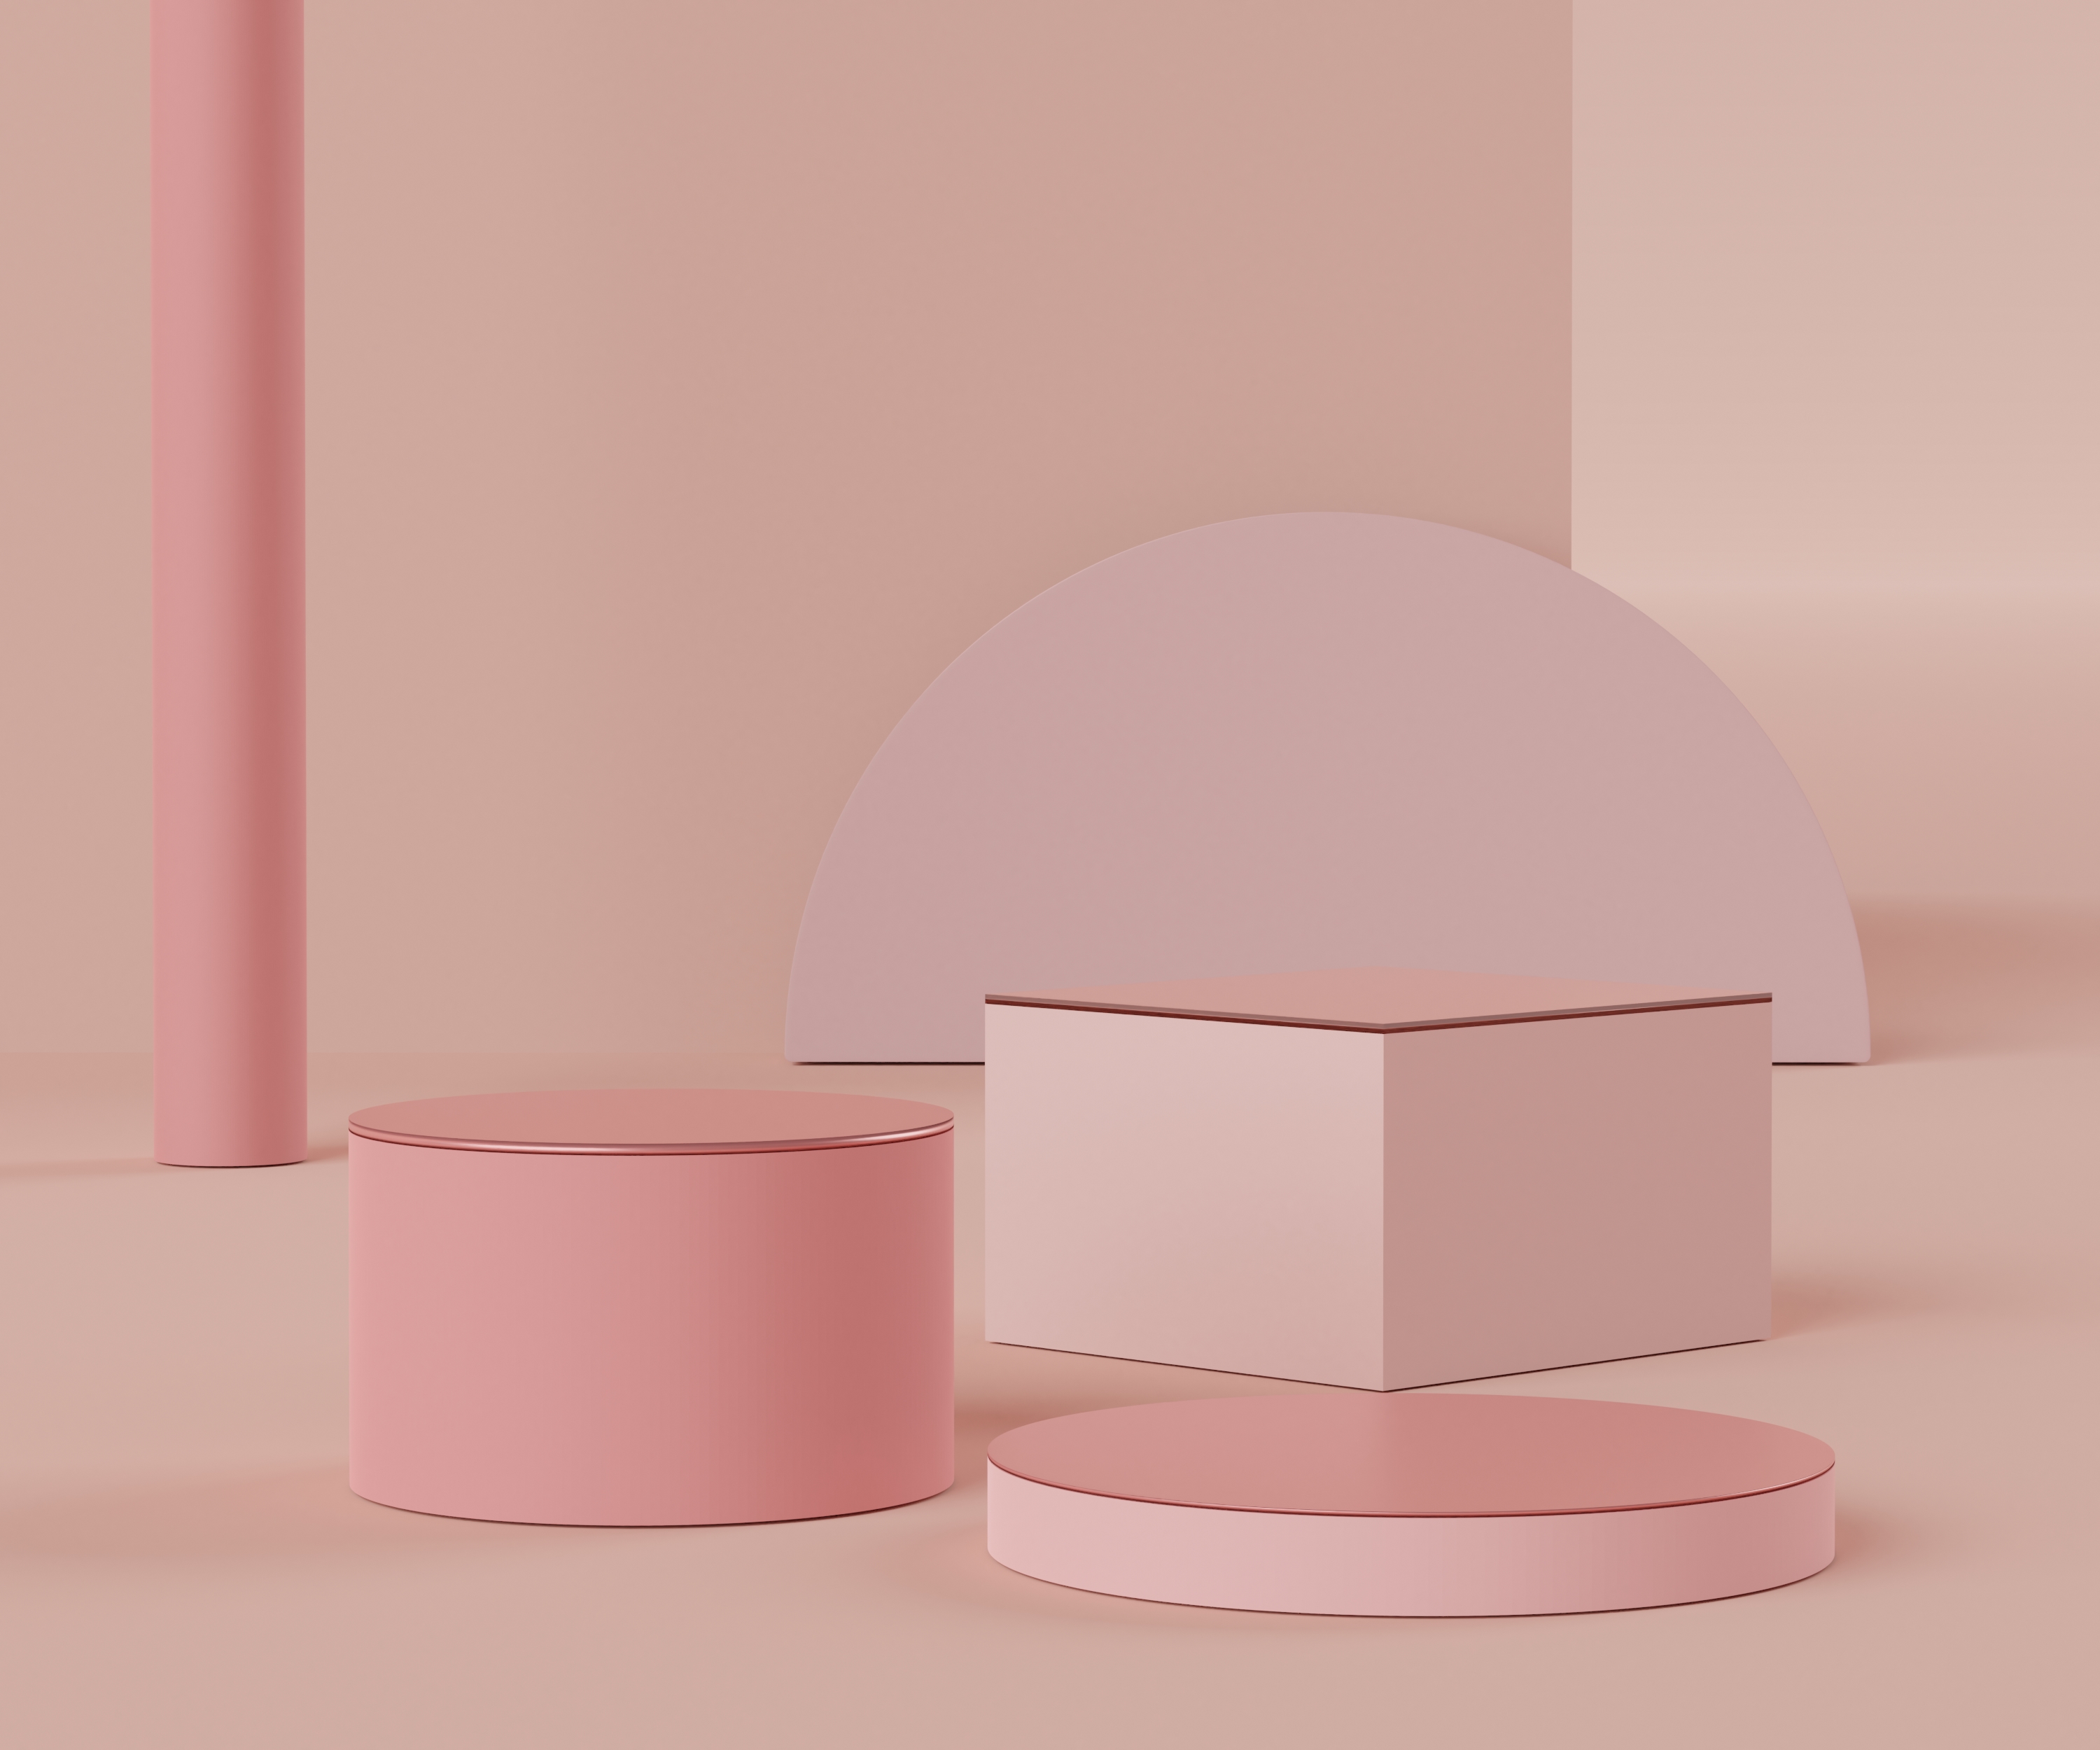 3D抽象简约几何形式。粉红珊瑚豪华台为您的设计展示.时装秀舞台、基座、店面,主题五彩缤纷.产品展示的空白场景.图片